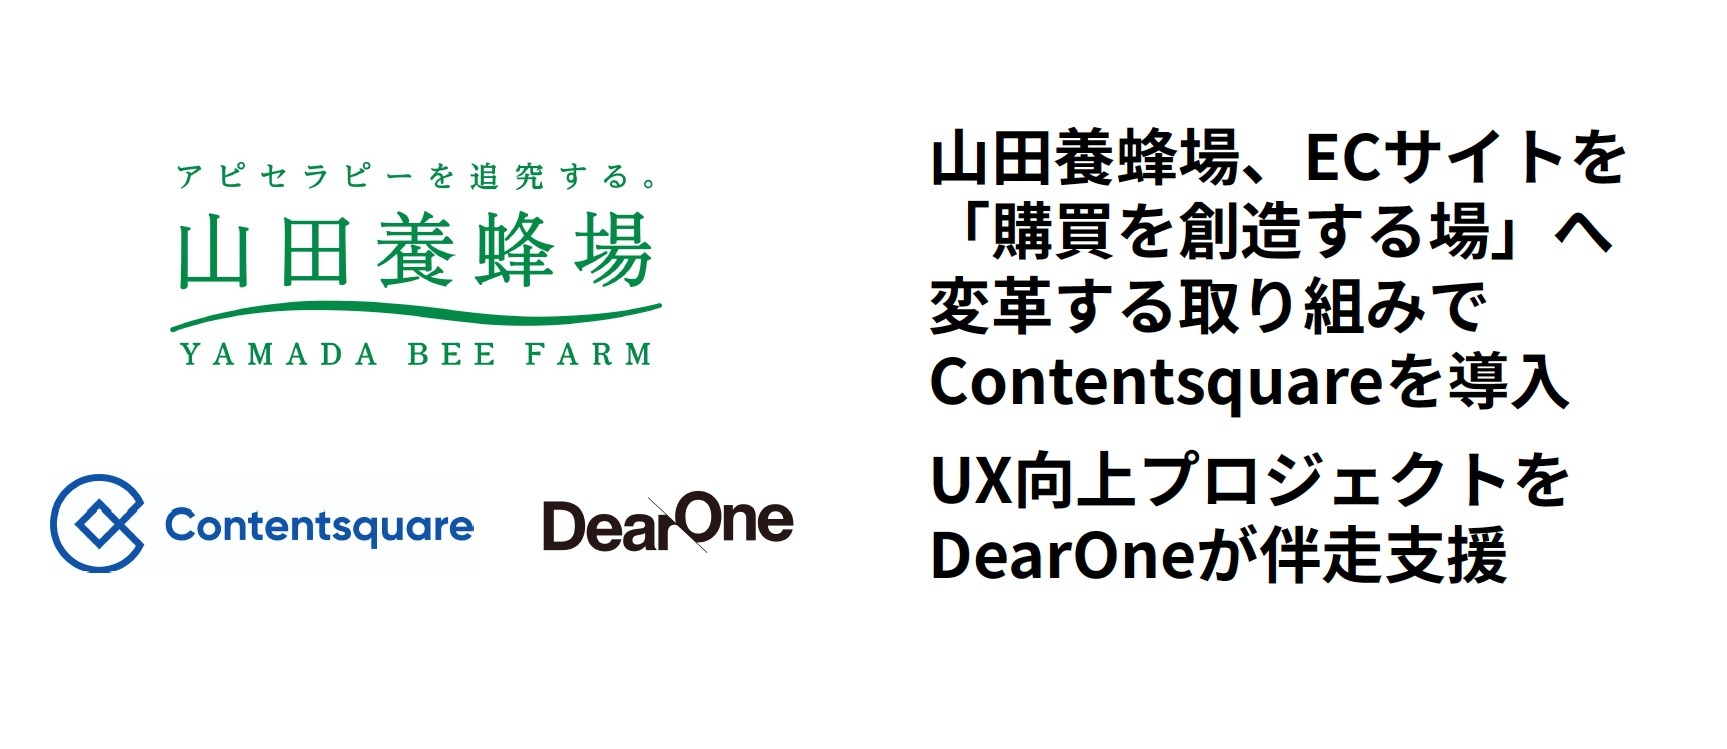 山田養蜂場、ECサイトを「購買を創造する場」へと進化させる取り組みの中でContentsquareを導入